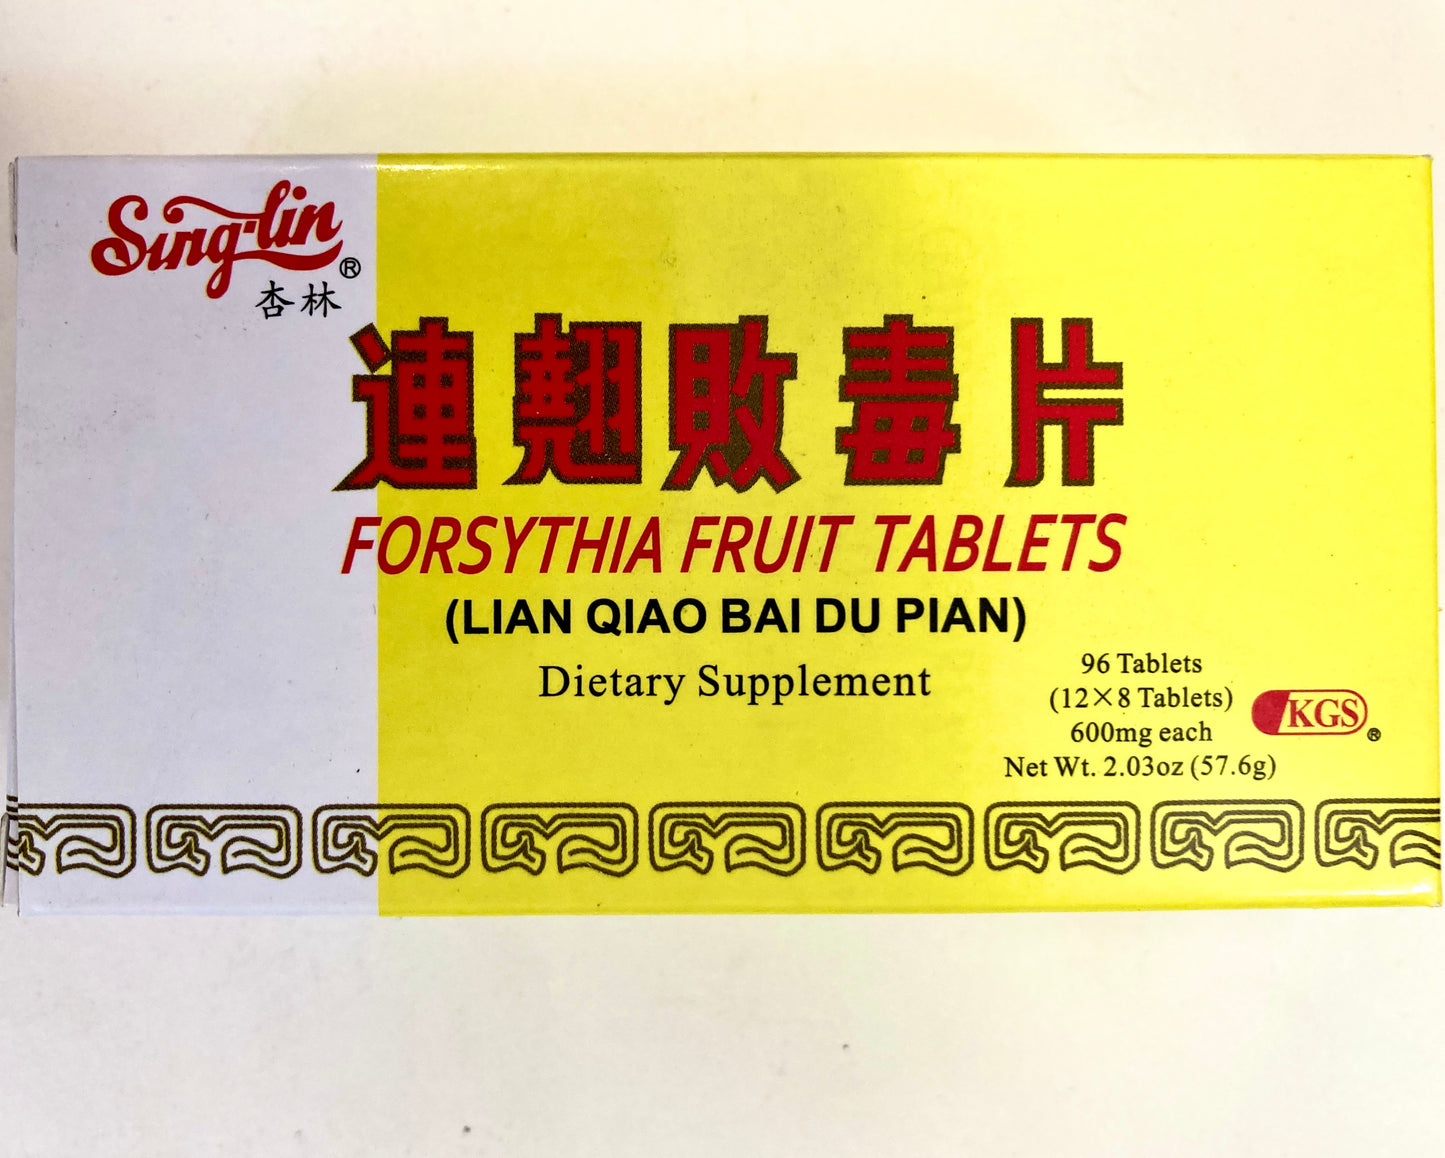 Lian Qiao Bai Du Pian - Forsythia Fruit Tablets